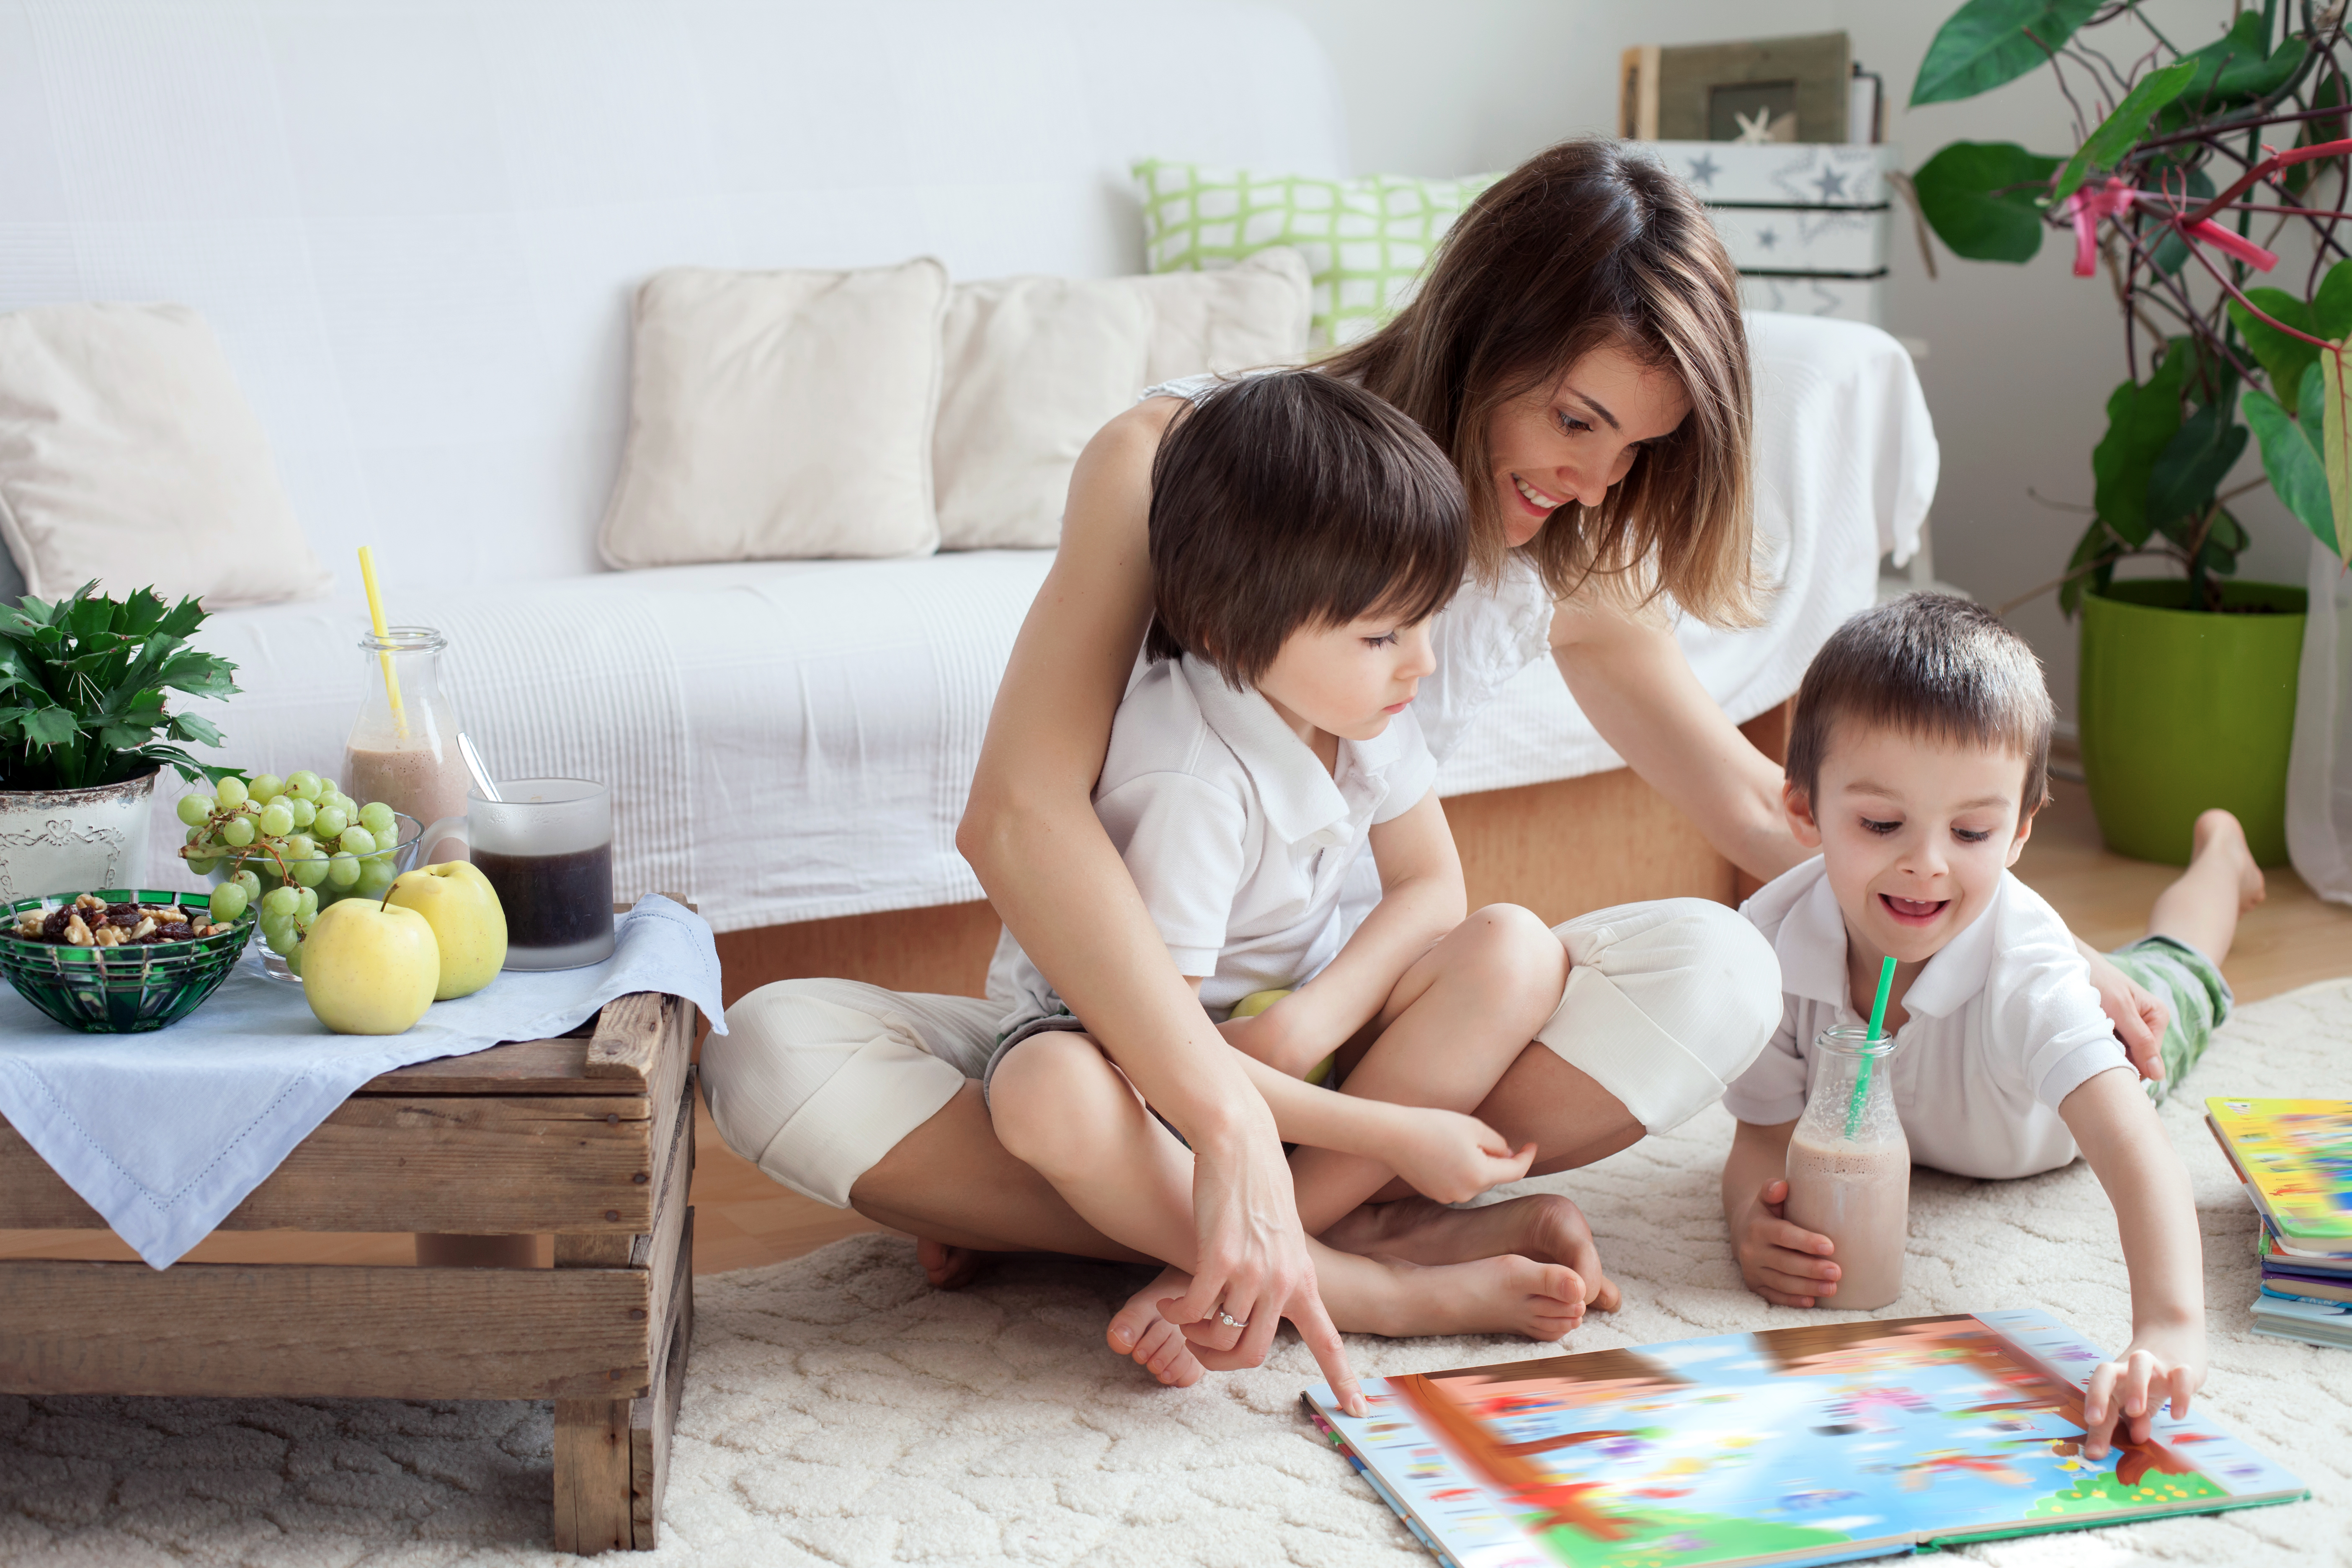 Une femme par terre lisant un livre avec ses deux enfants | Source : Shutterstock